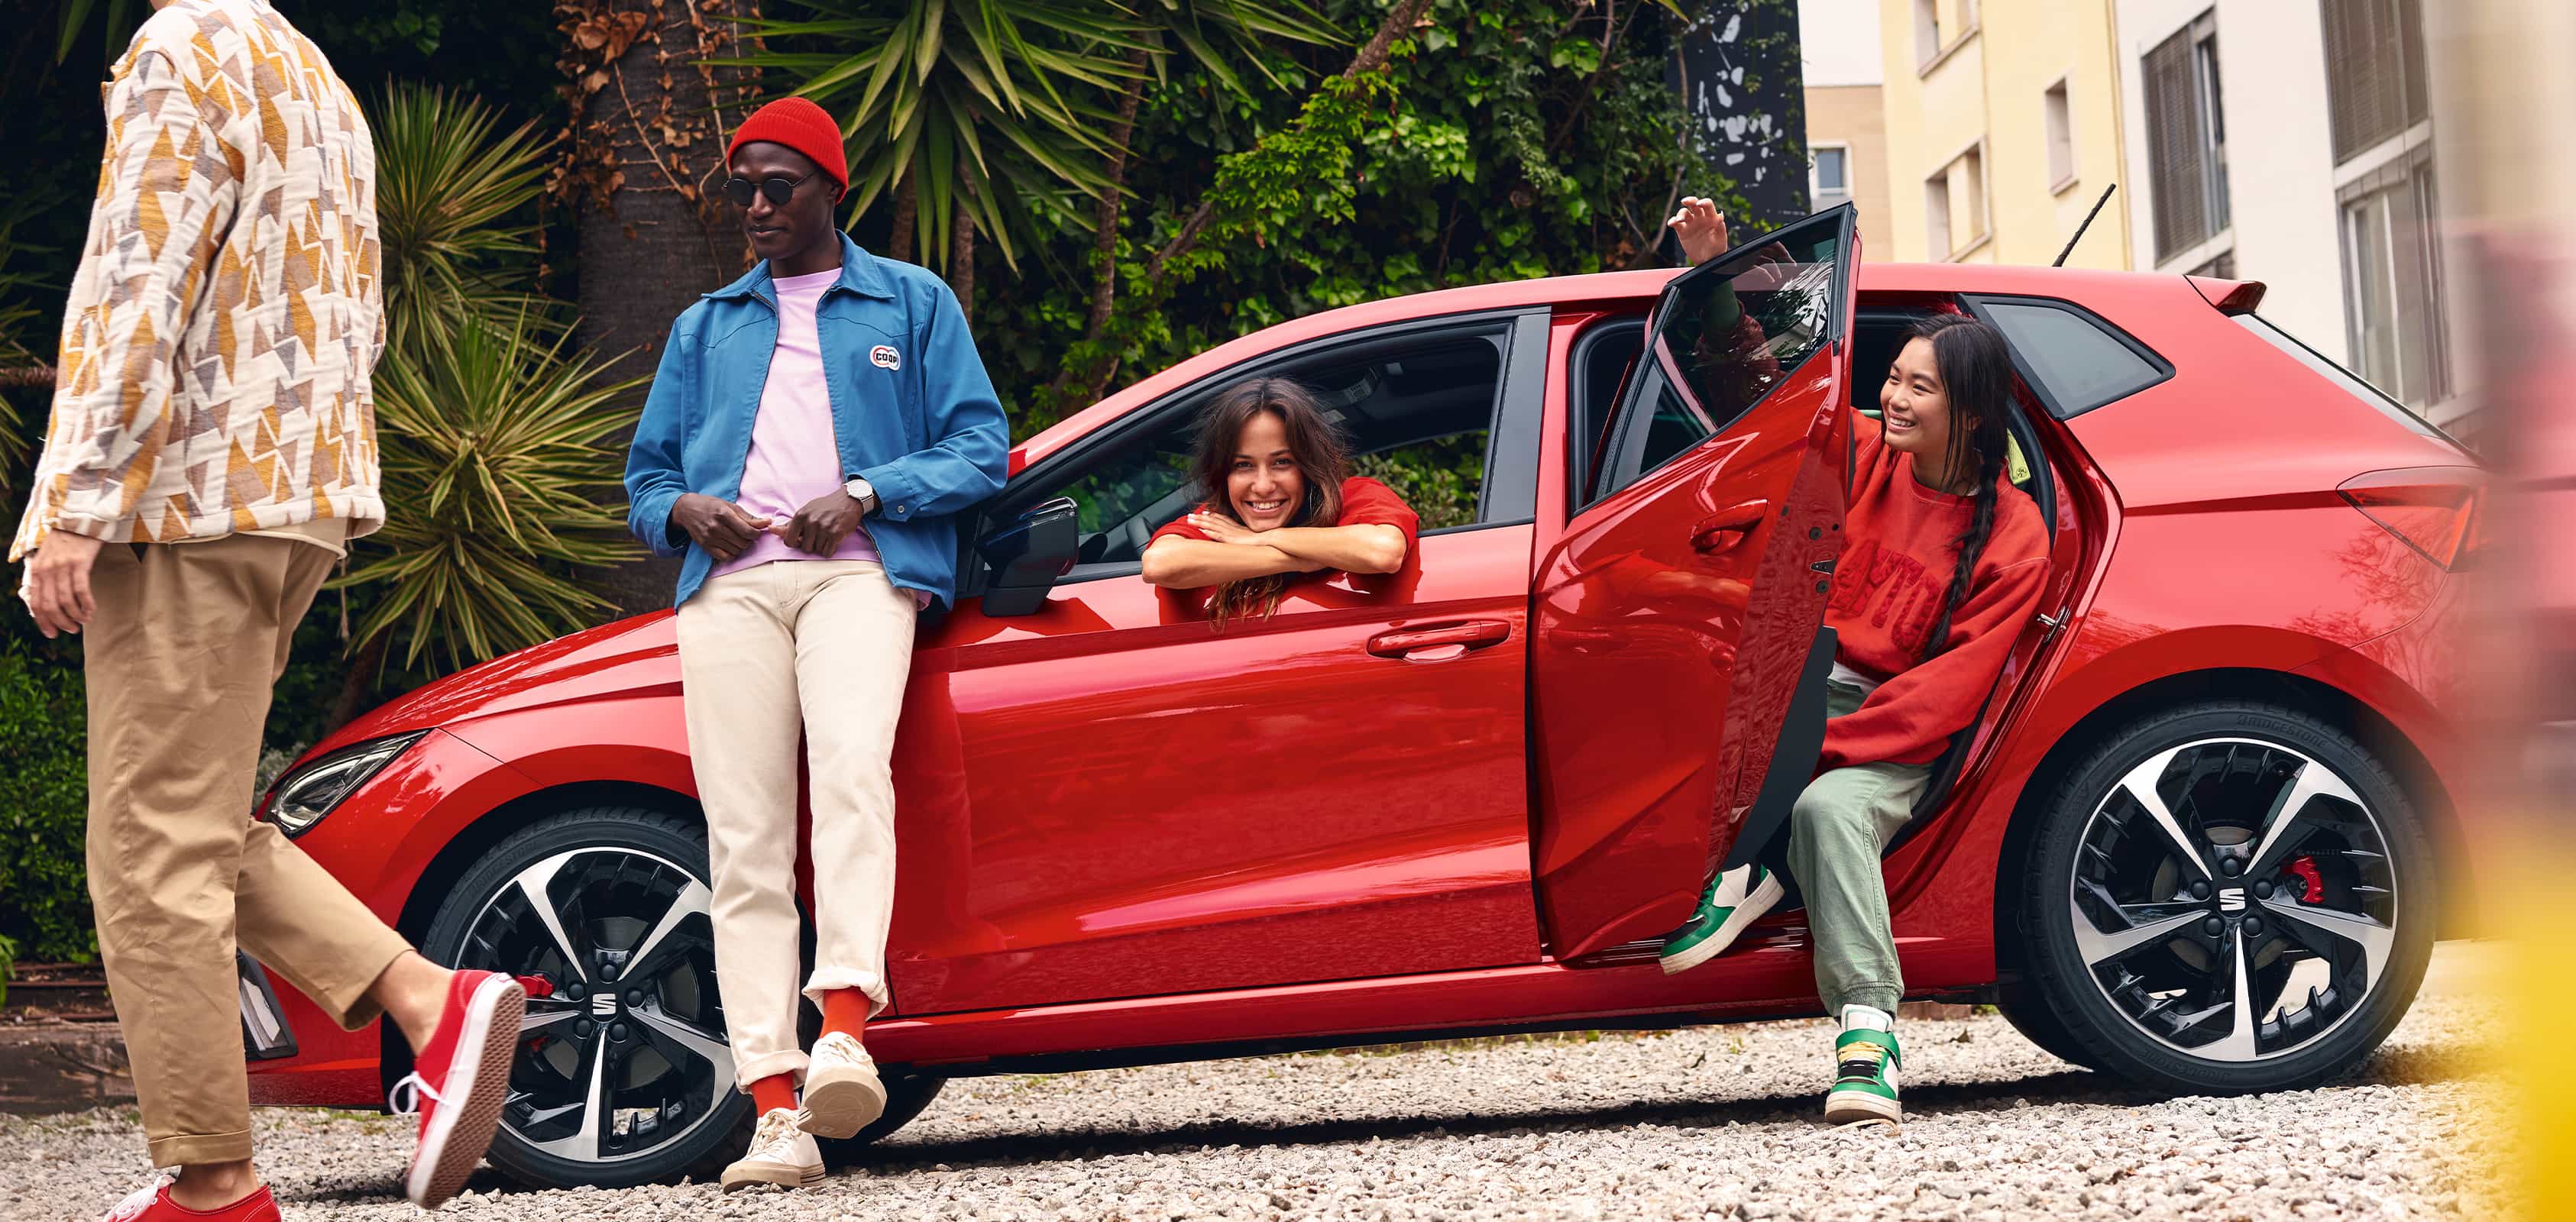 Nowy SEAT Ibiza w kolorze desire red, widok z boku